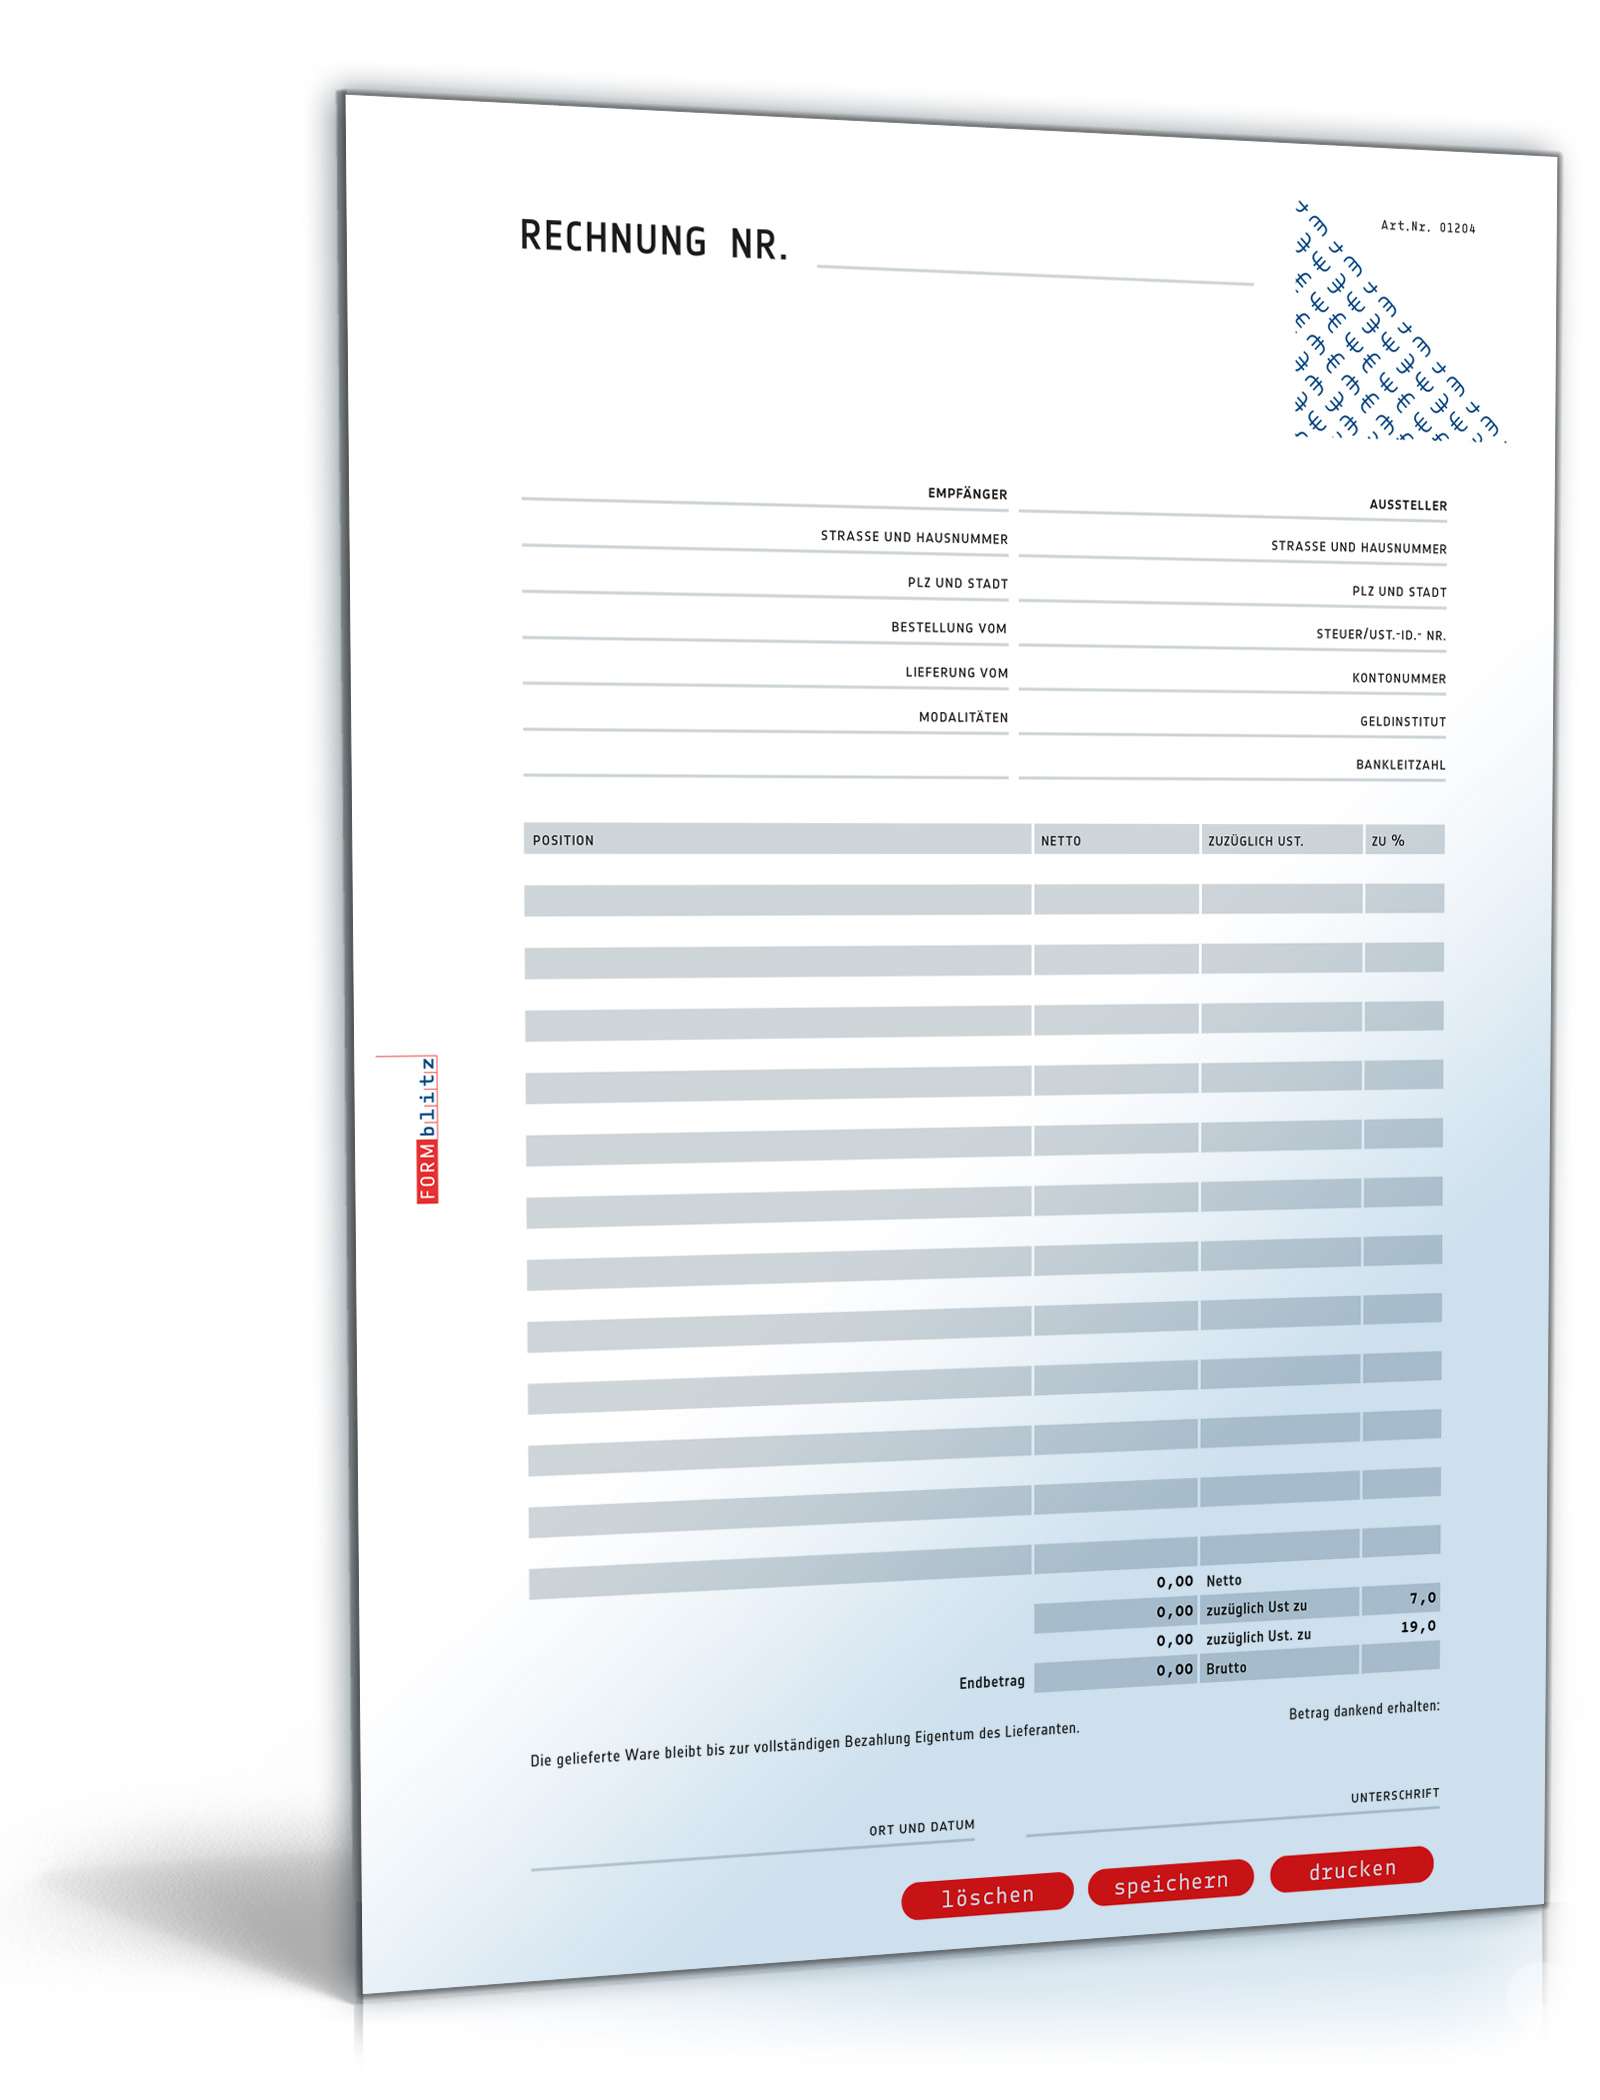 Hauptbild des Produkts: Rechnung netto mit Addition und Variation der Umsatzsteuer